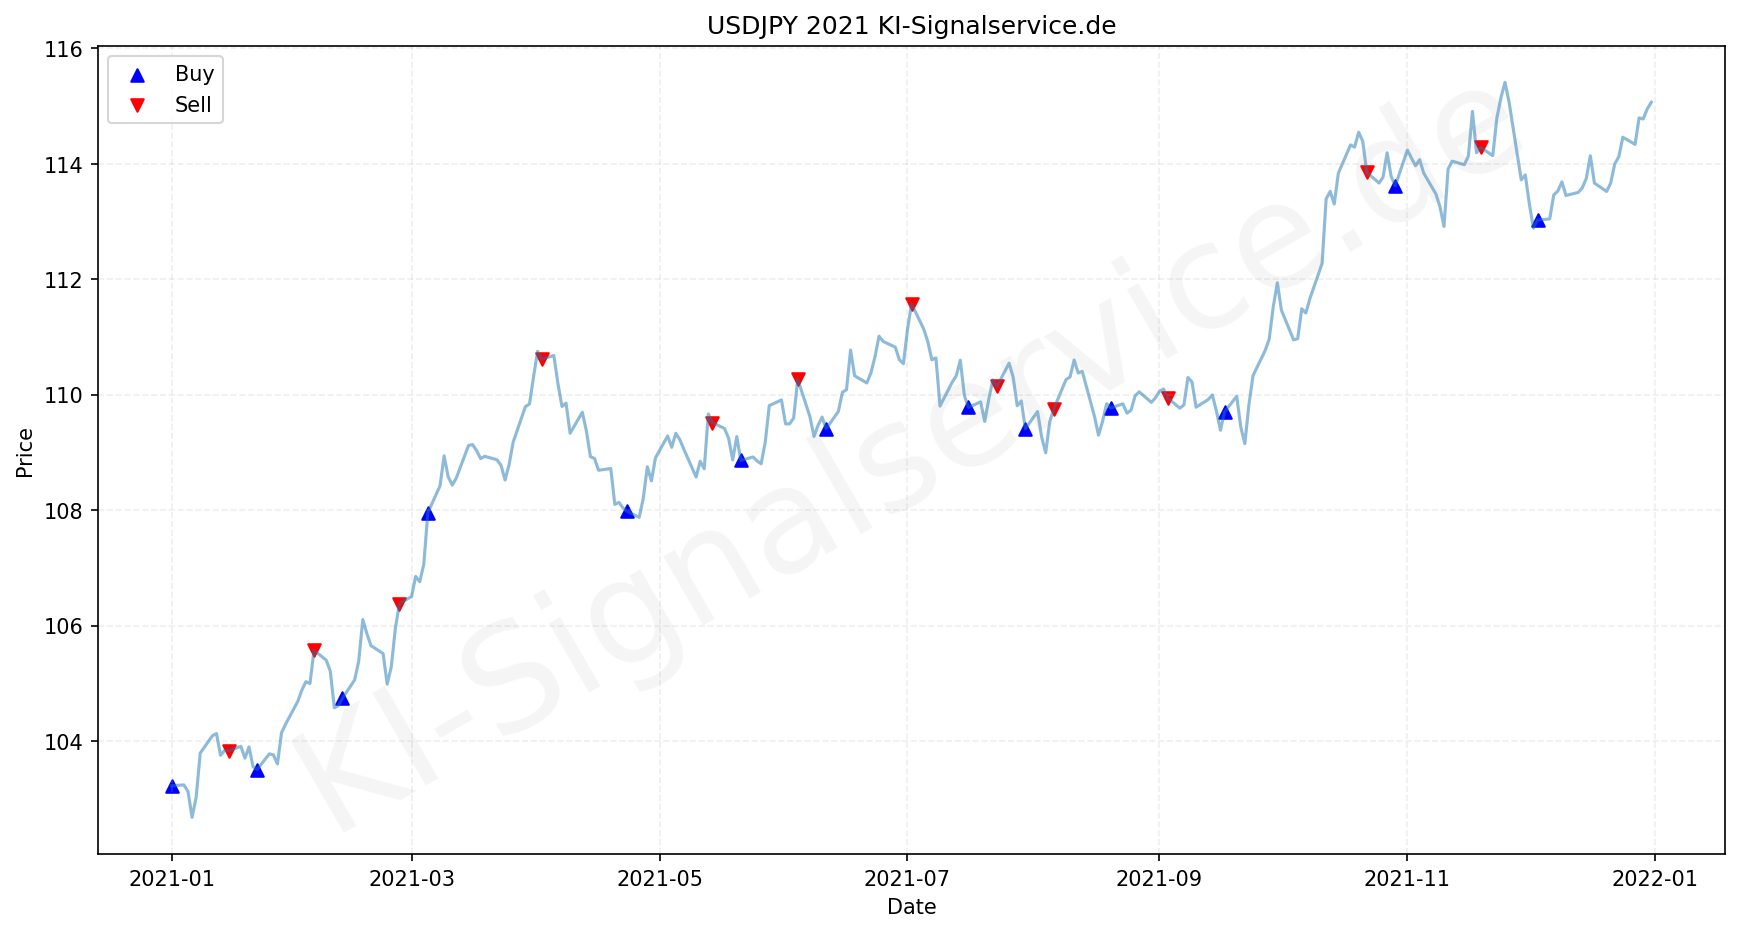 USDJPY Chart - KI Tradingsignale 2021